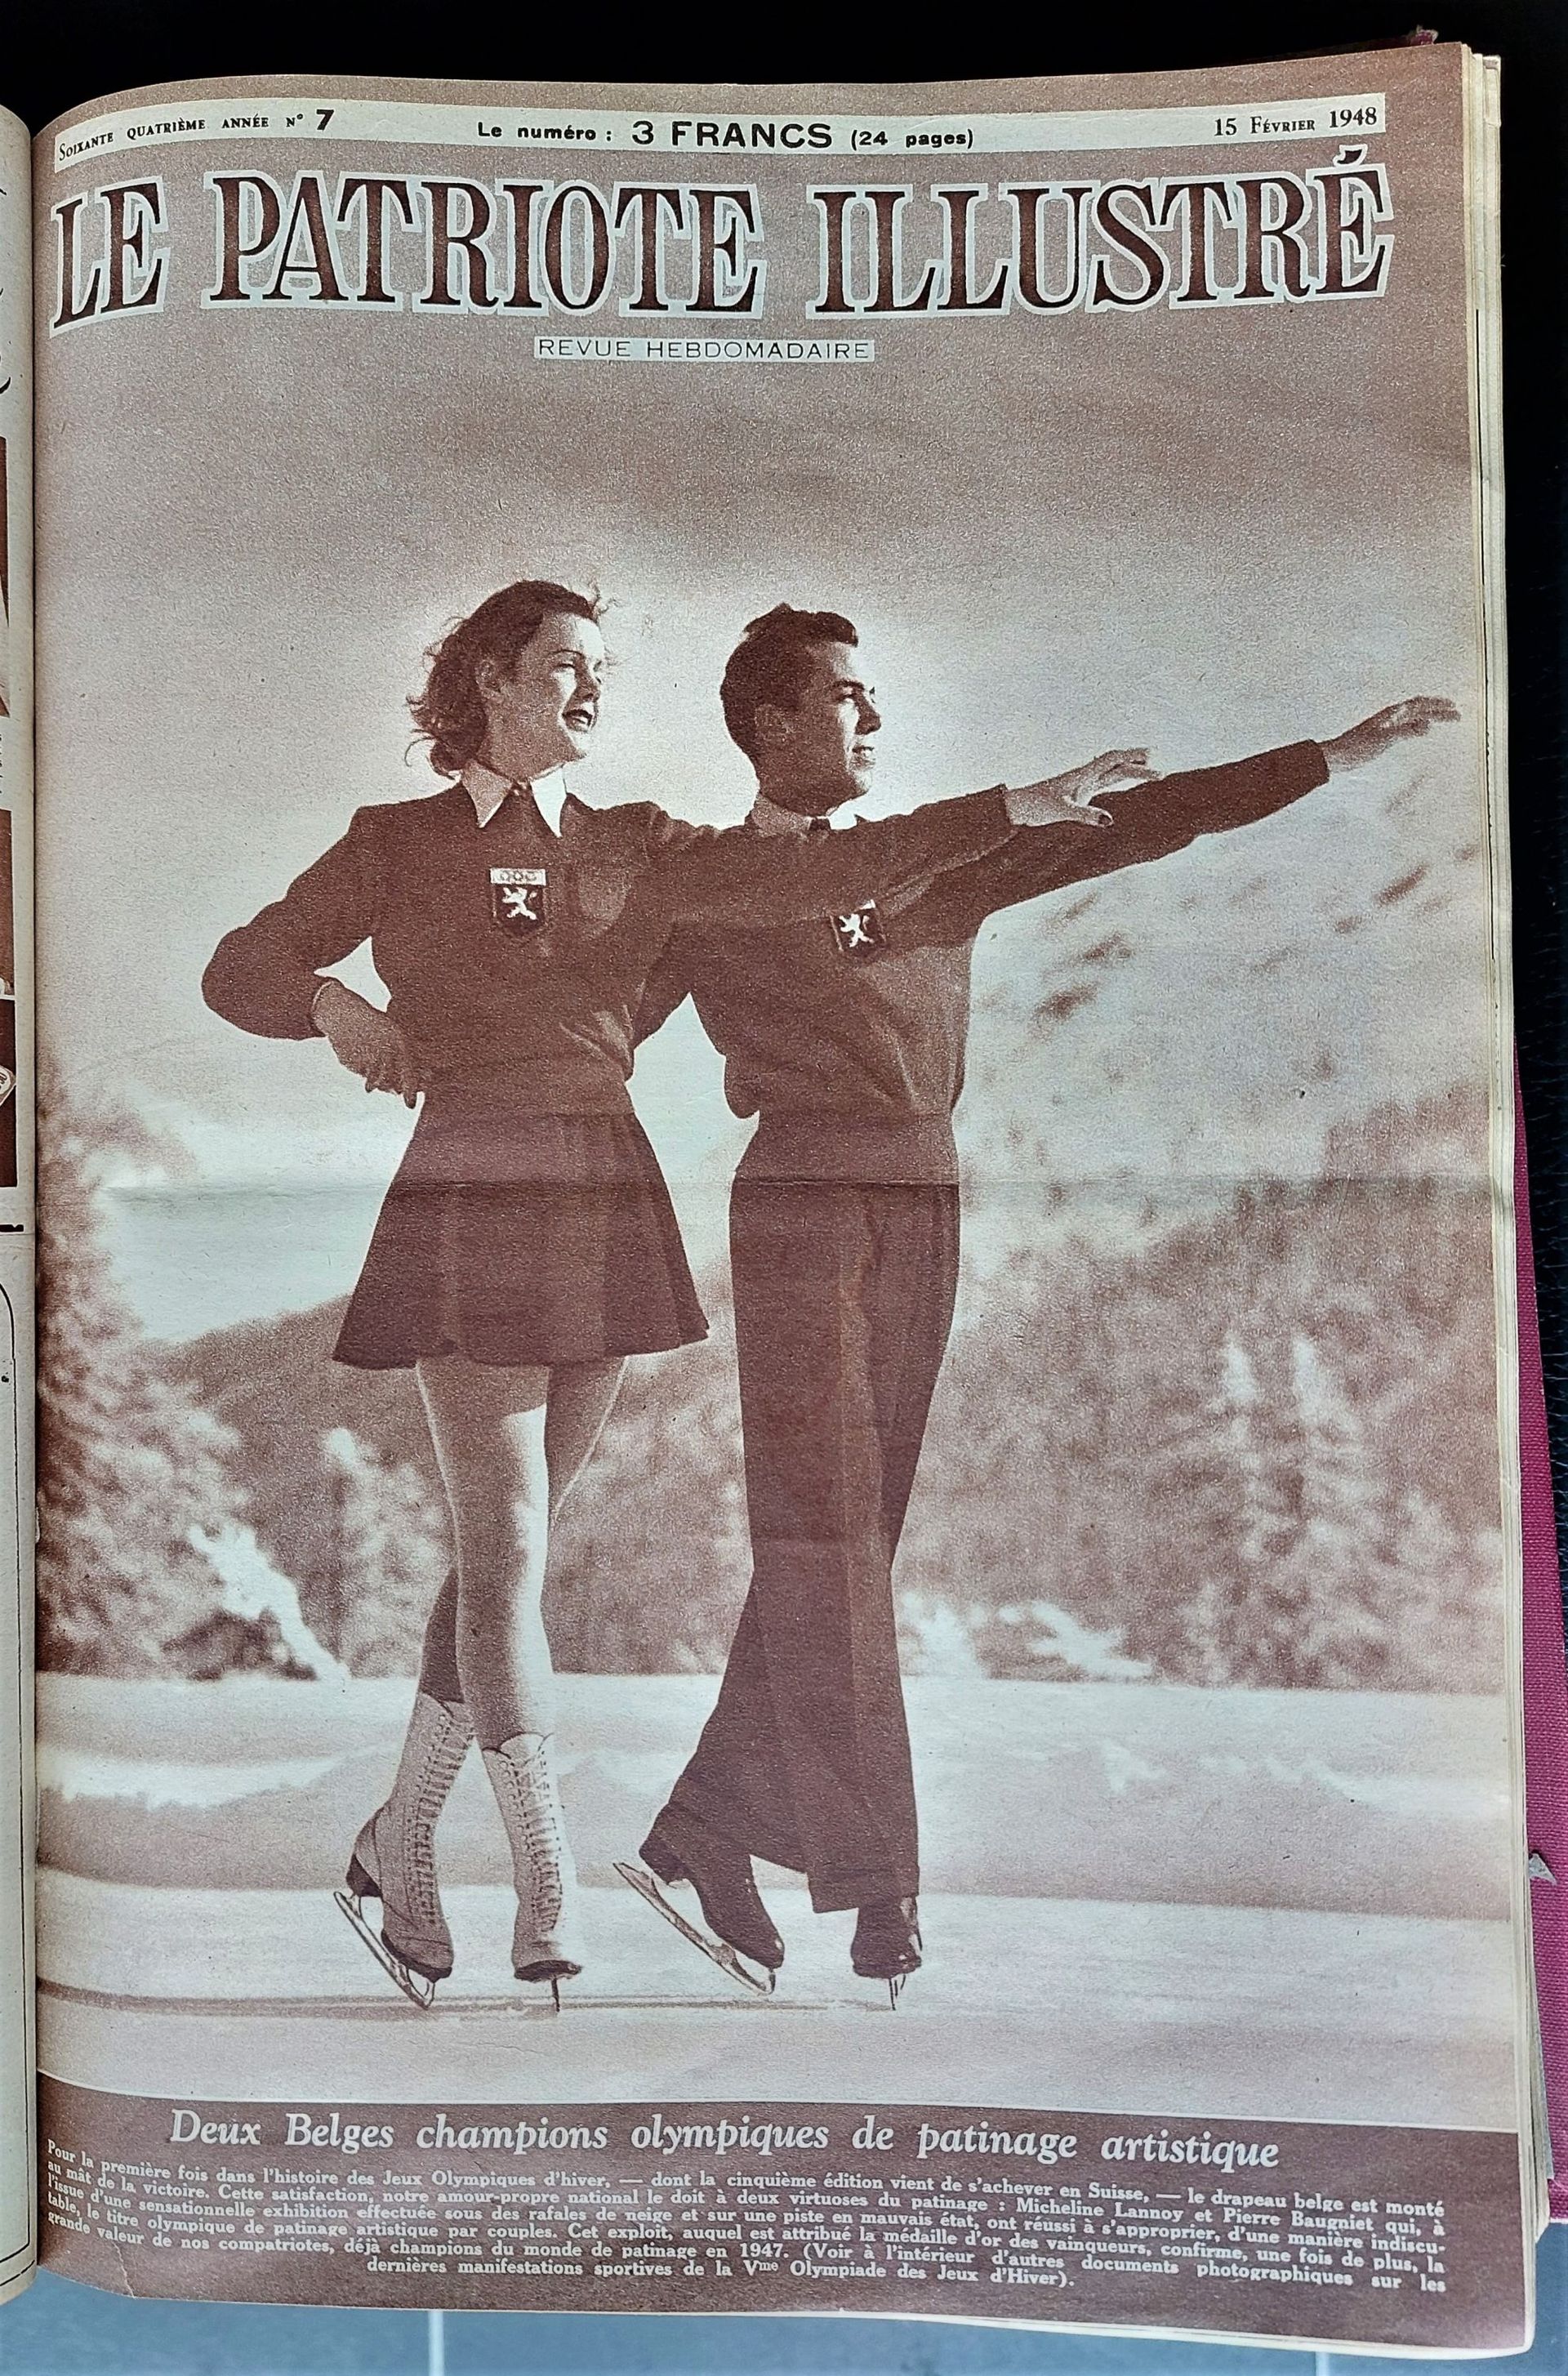 couverture de la revue "Le Patriote illustré" du 15 février 1948 mettant en exergue la première grande victoire olympique d'hiver de la Belgique, avec Micheline Lannoy et Pierre Baugniet. 